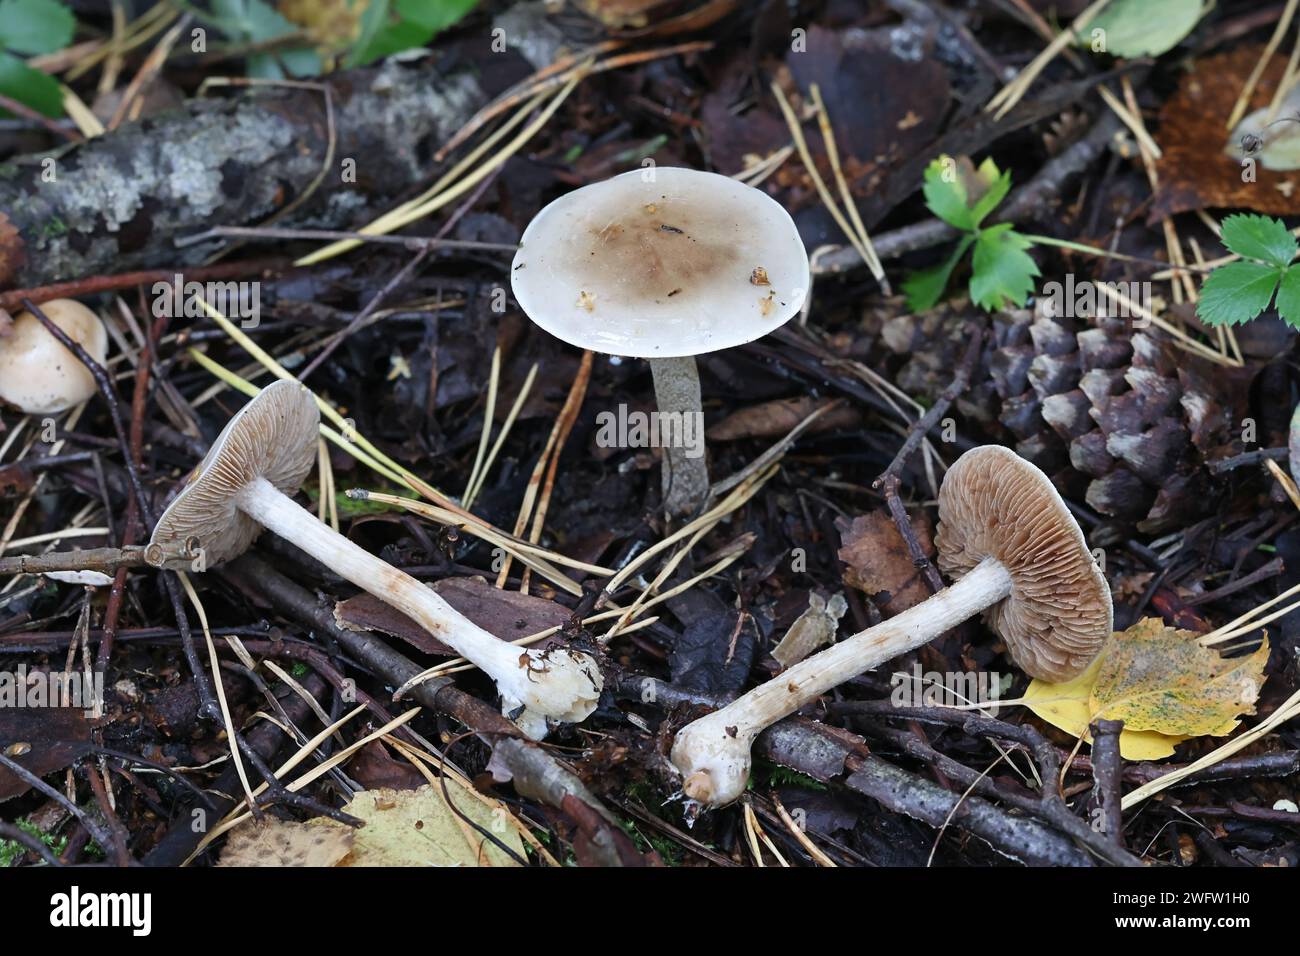 Hebeloma incarnatulum, auch bekannt als Giftkuchen, Wildpilz aus Finnland Stockfoto